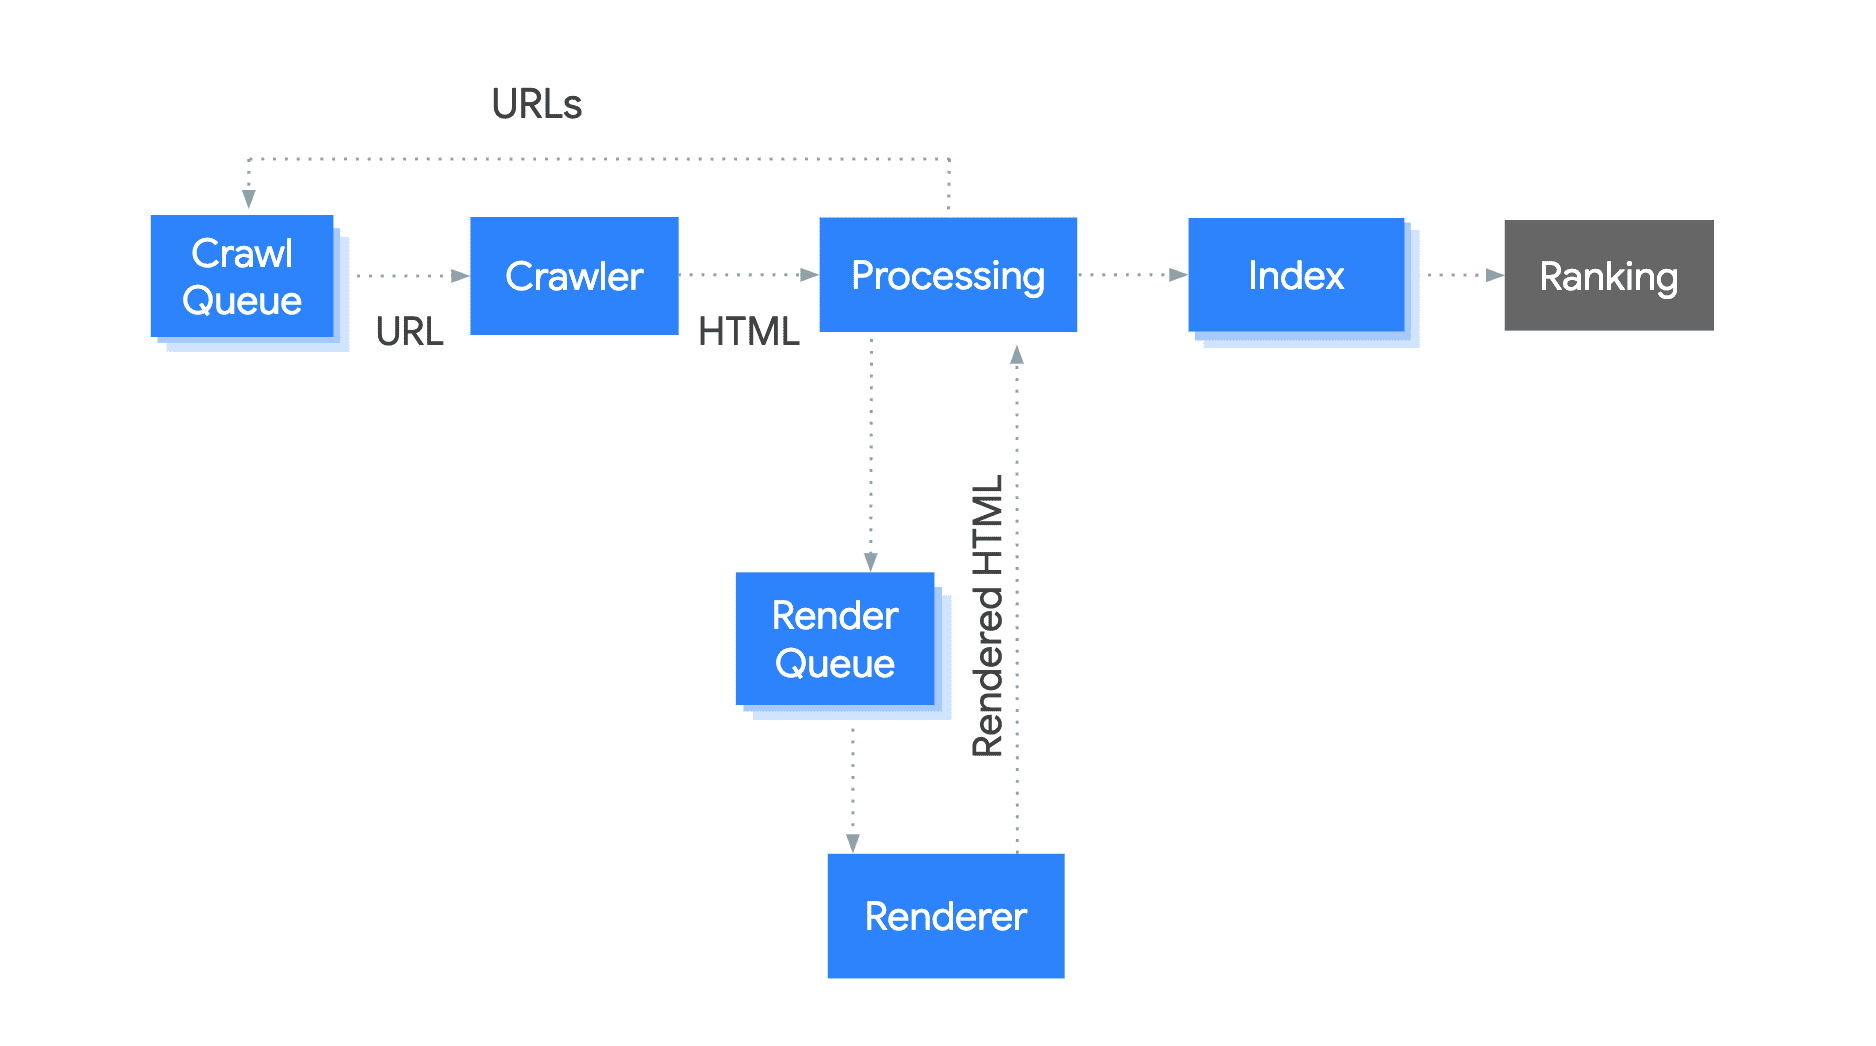 此图展示了网址从抓取队列移到处理步骤，该步骤提取链接的网址并将其添加到抓取队列（一个呈现队列，流向生成 HTML 的呈现器）。处理器使用此 HTML 再次提取链接的网址，并将内容编入索引。